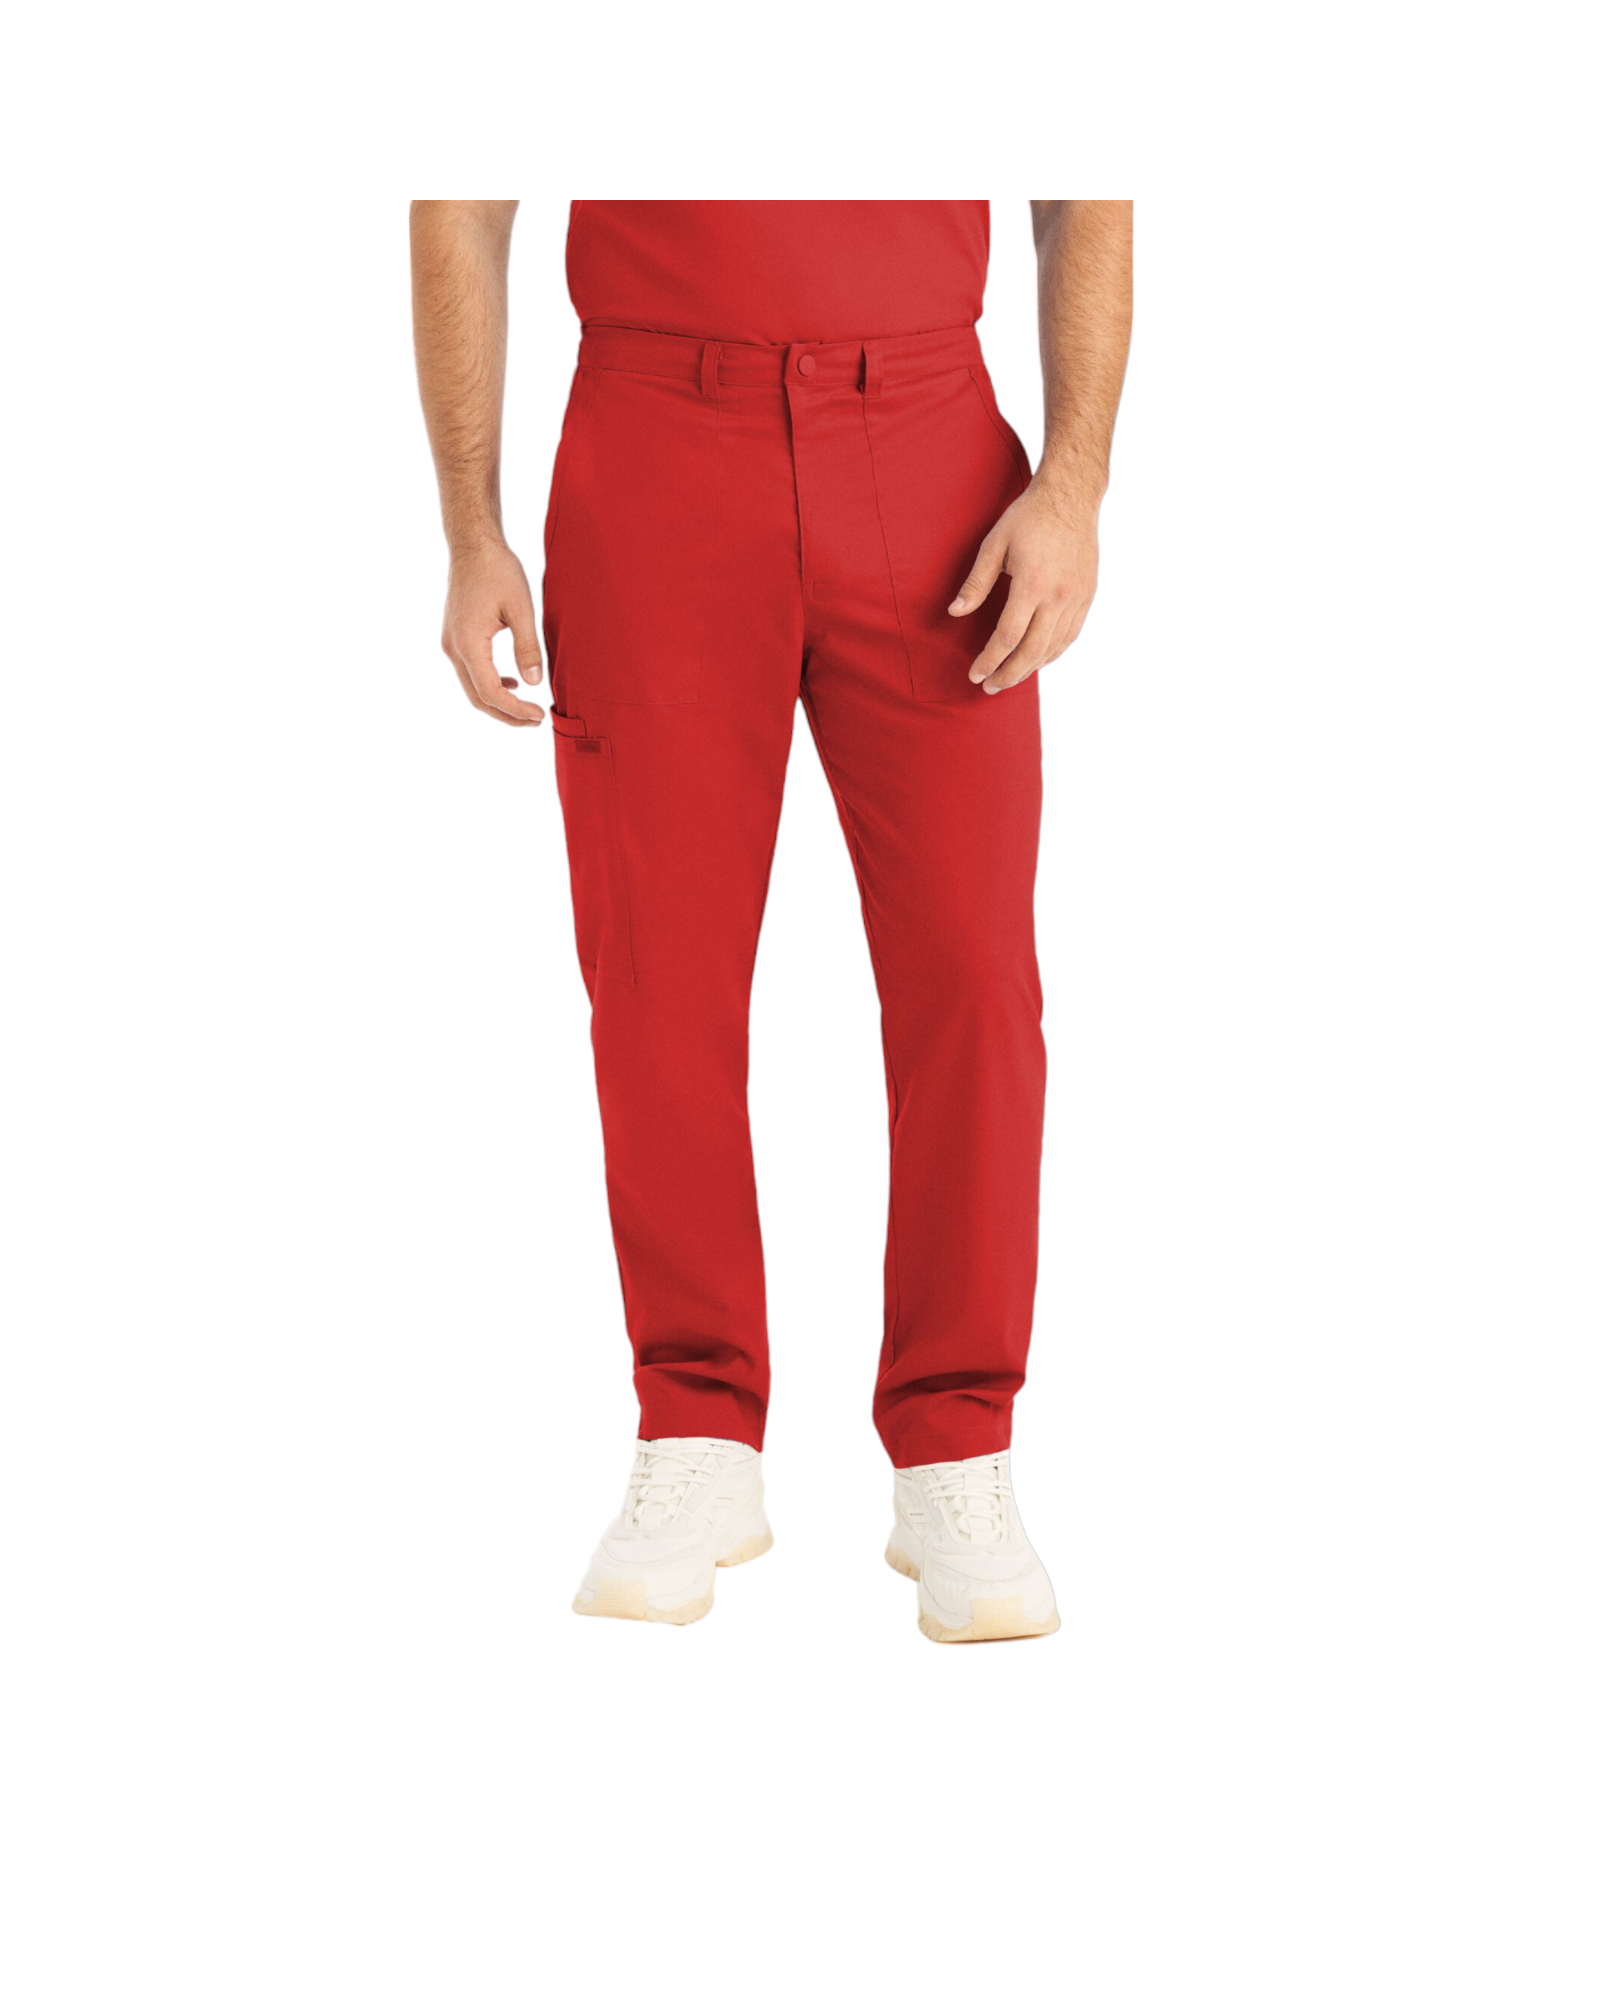 Pantalon jogger pour hommes Landau Proflex #LB408 OS avec braguette zippée avec élastique dissimulé, cordon de serrage, 2 poches cargo plaqué dont une avec cordon élastique, 2 poches avant et 2 poches arrière., couleur Rouge.